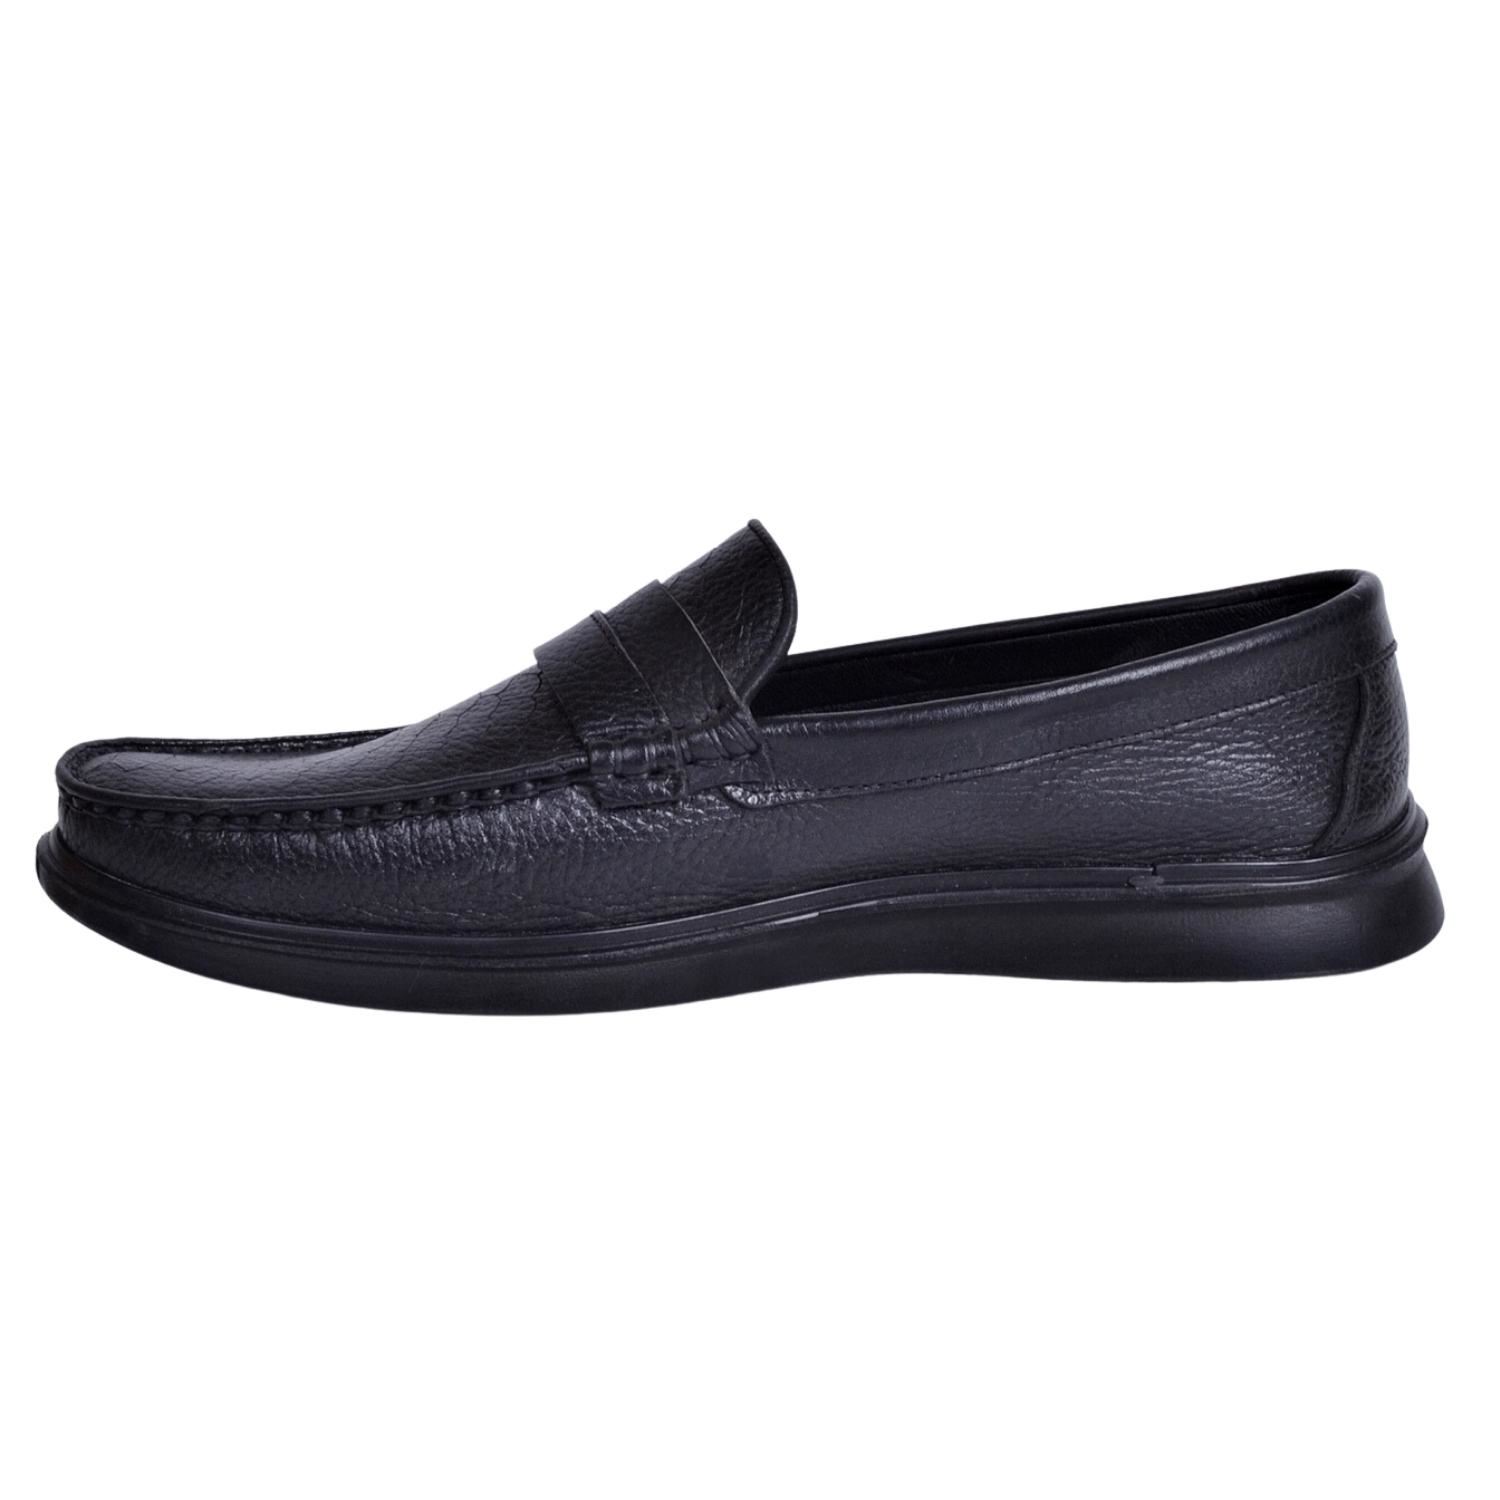 İskarpin 920 Erkek Siyah Deri Büyük Numara Ayakkabı